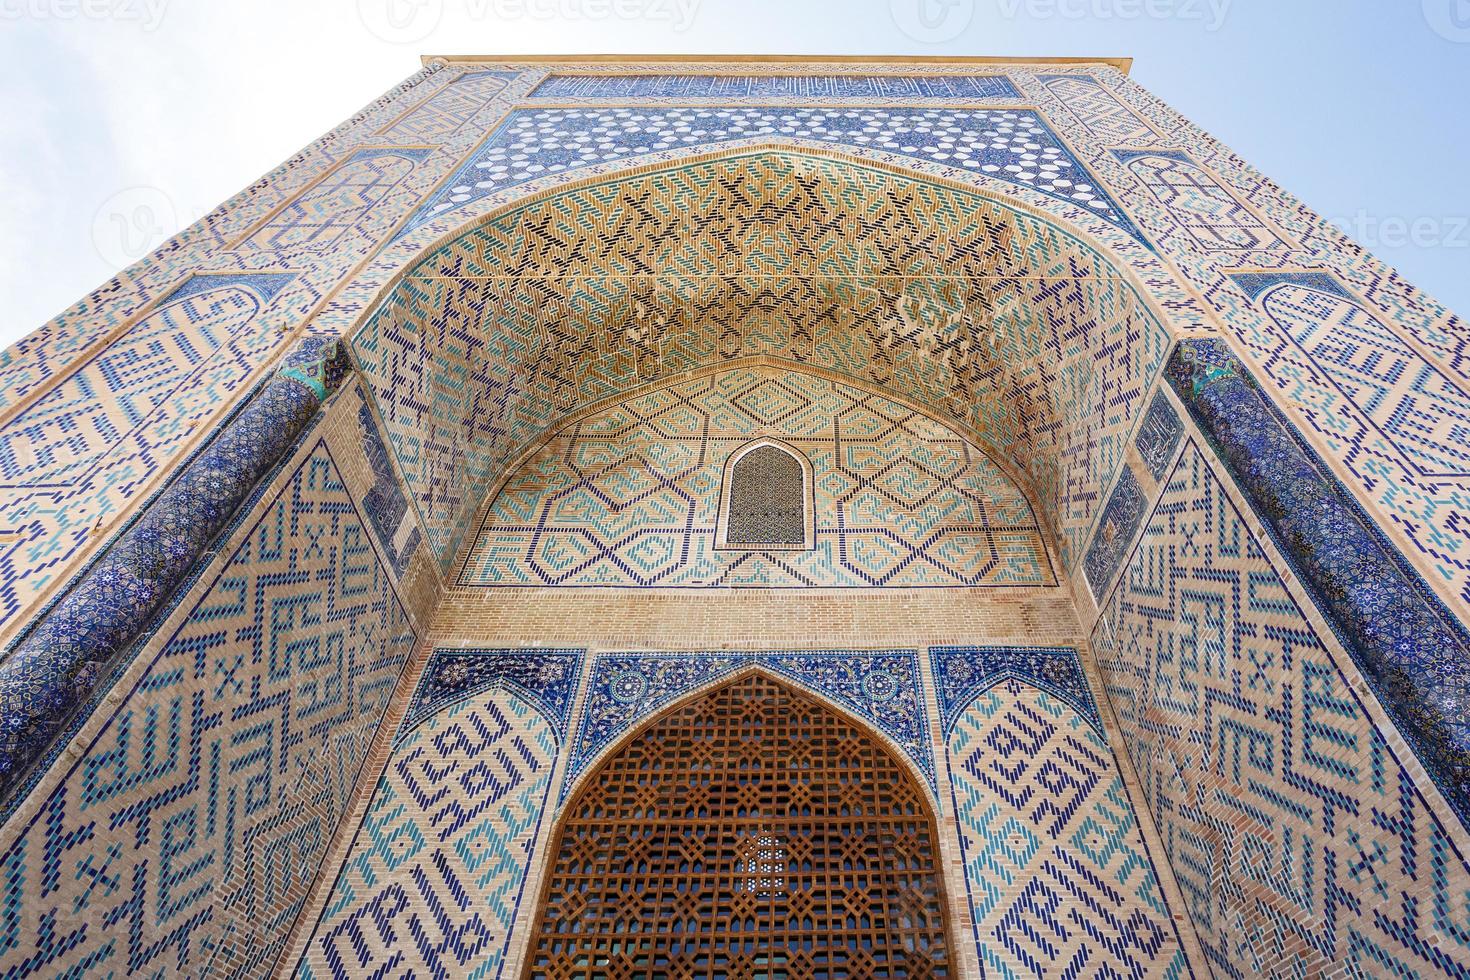 Exterior of the Kok Gumbaz mosque in Shahrisabz, Qashqadaryo, Uzbekistan, Central Asia photo